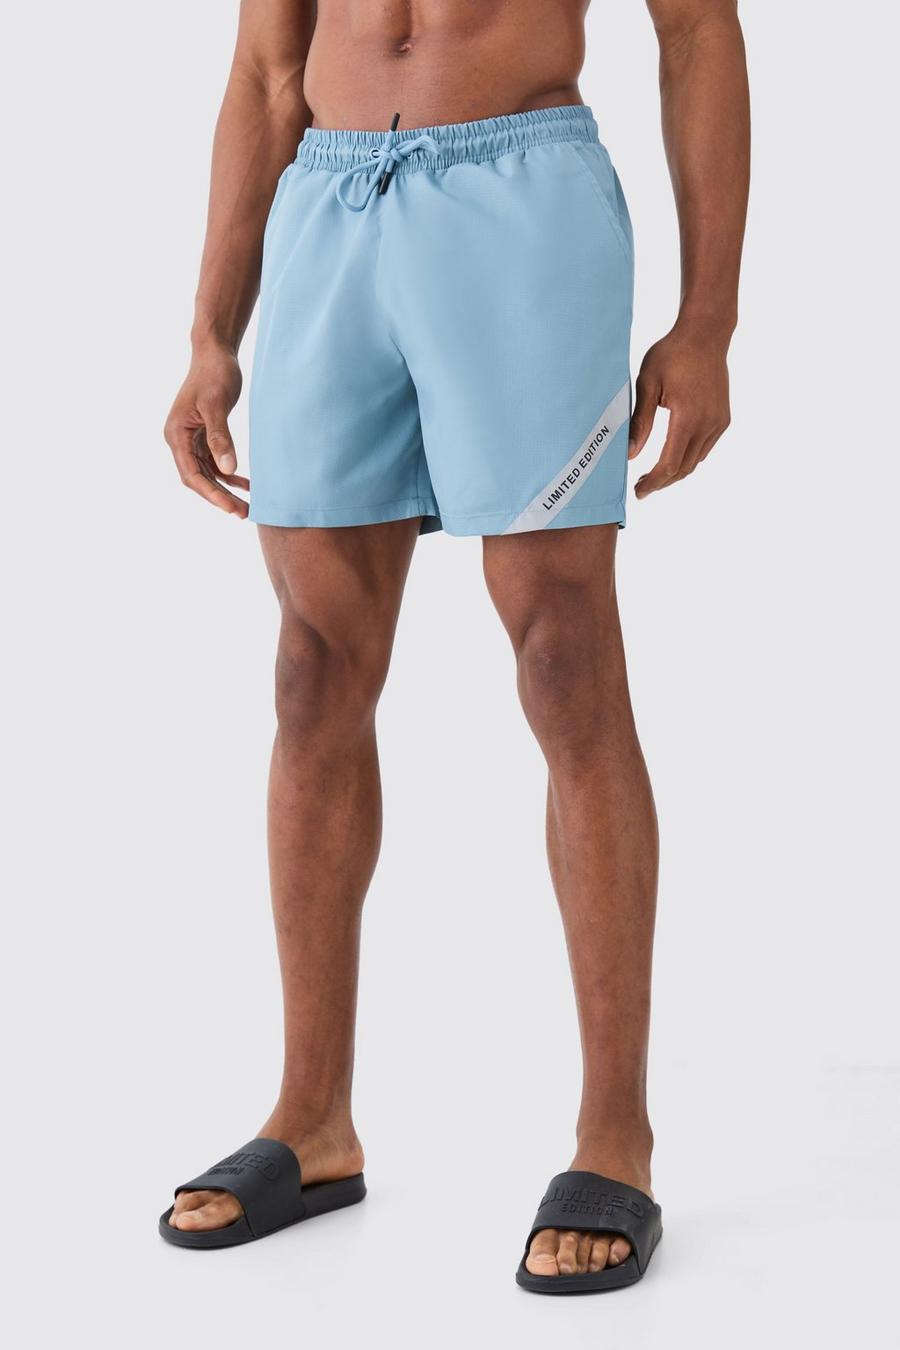 Bañador de largo medio con costuras antidesgarros Limited Edition, Slate blue